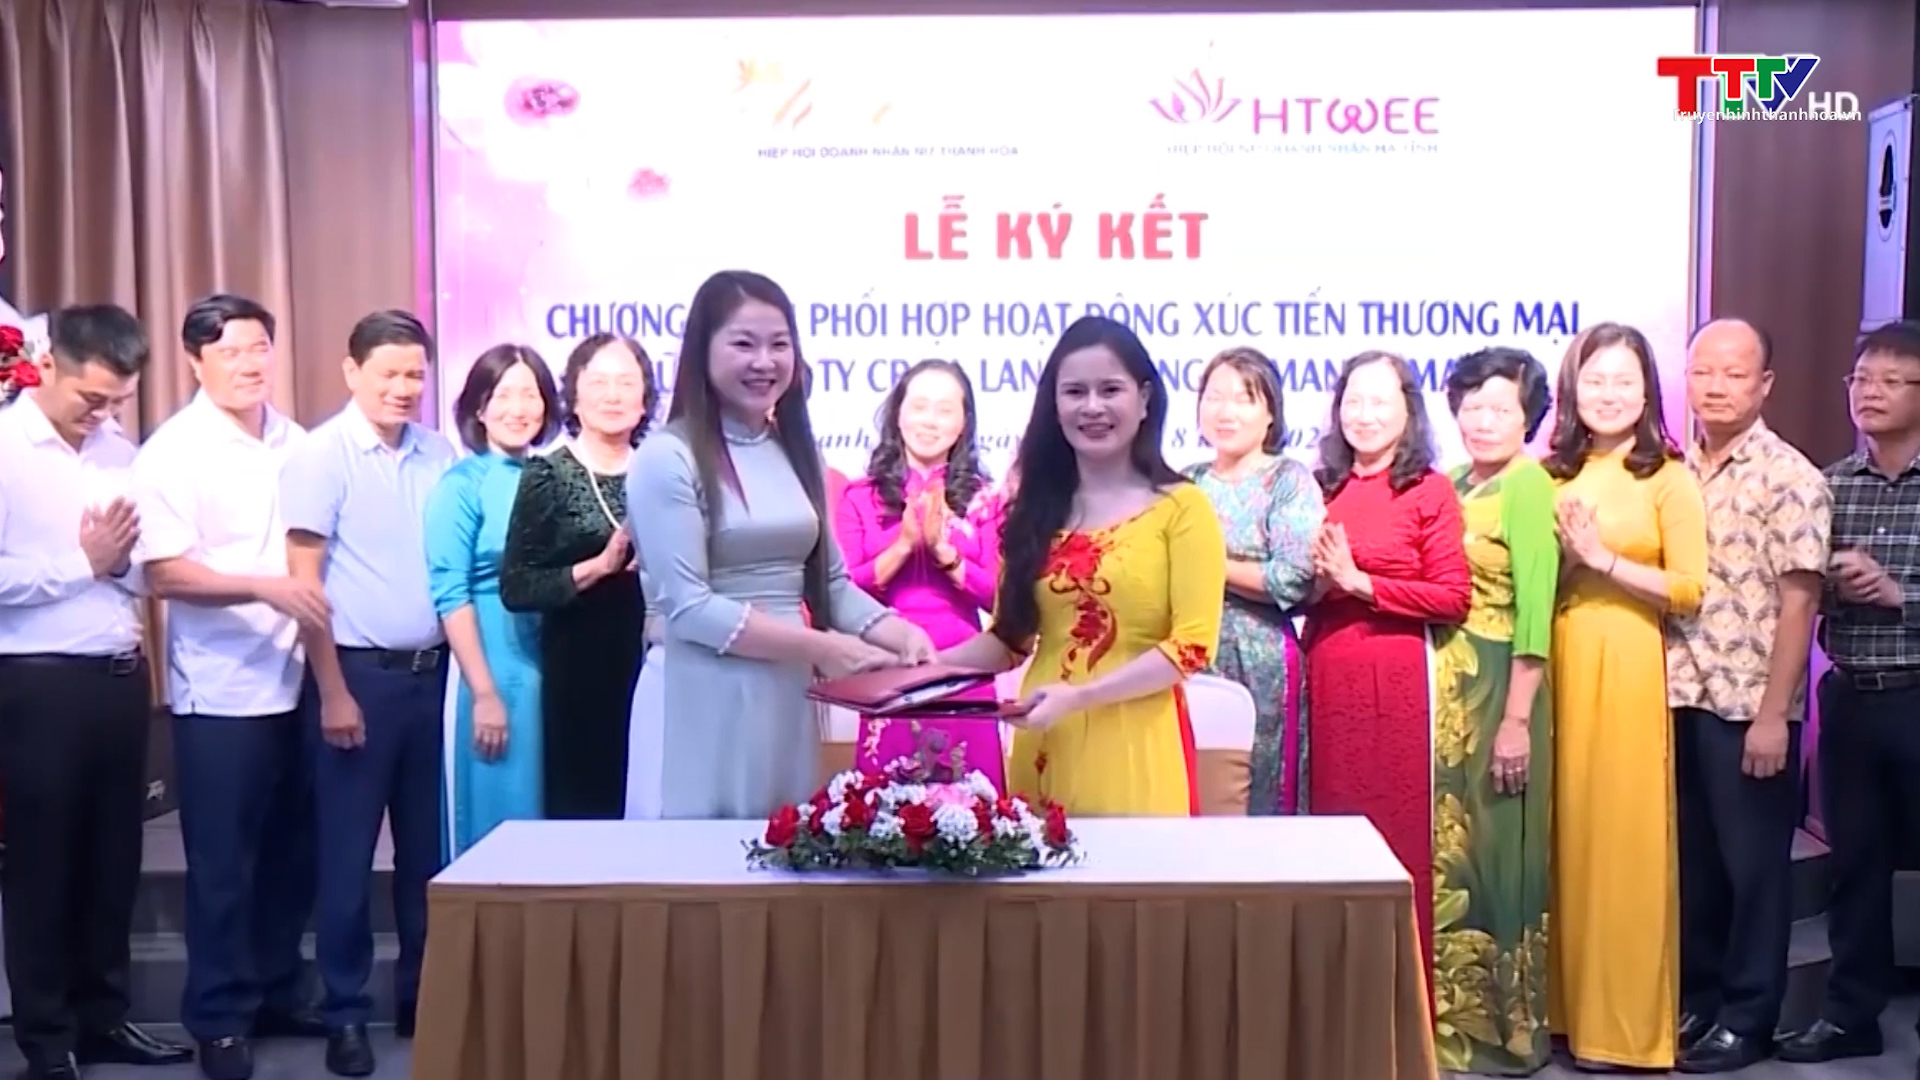 Hiệp hội Doanh nhân nữ Thanh Hoá, ngôi nhà chung của các doanh nghiệp do nữ làm chủ  - Ảnh 7.